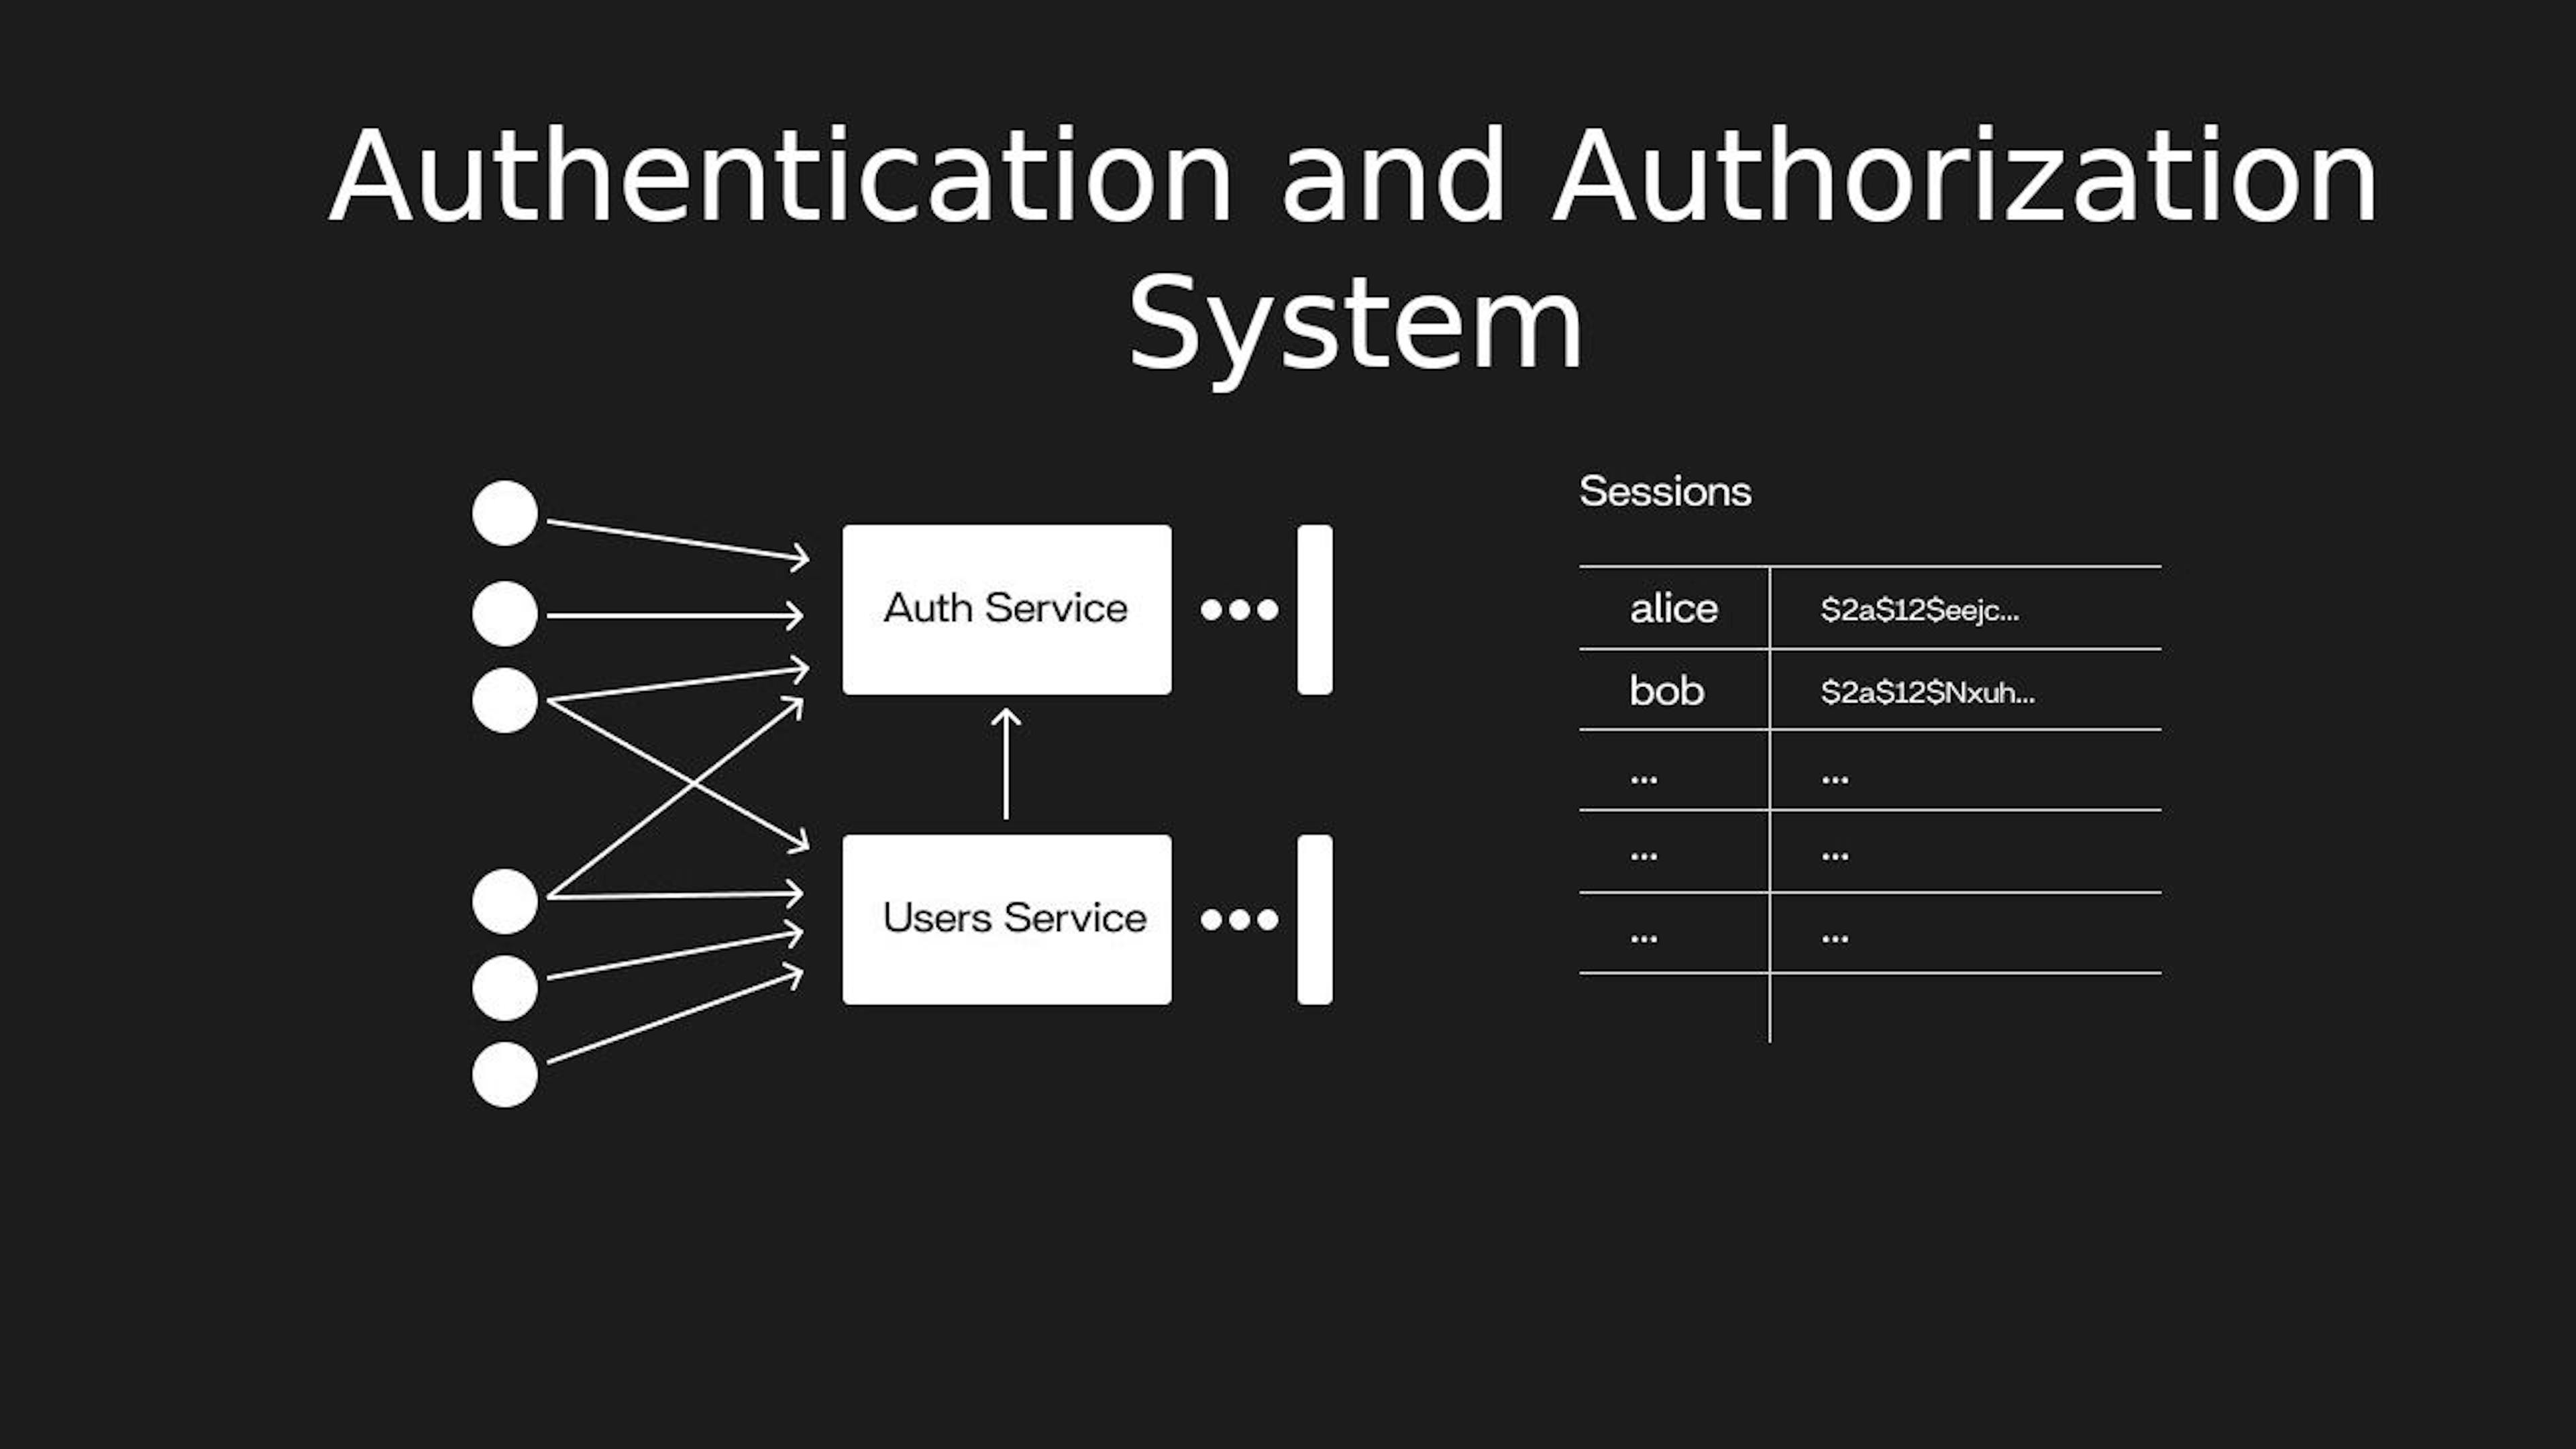 Entwurf eines Authentifizierungs- und Autorisierungssystems (Quelle: InterviewPen. Modifiziert)